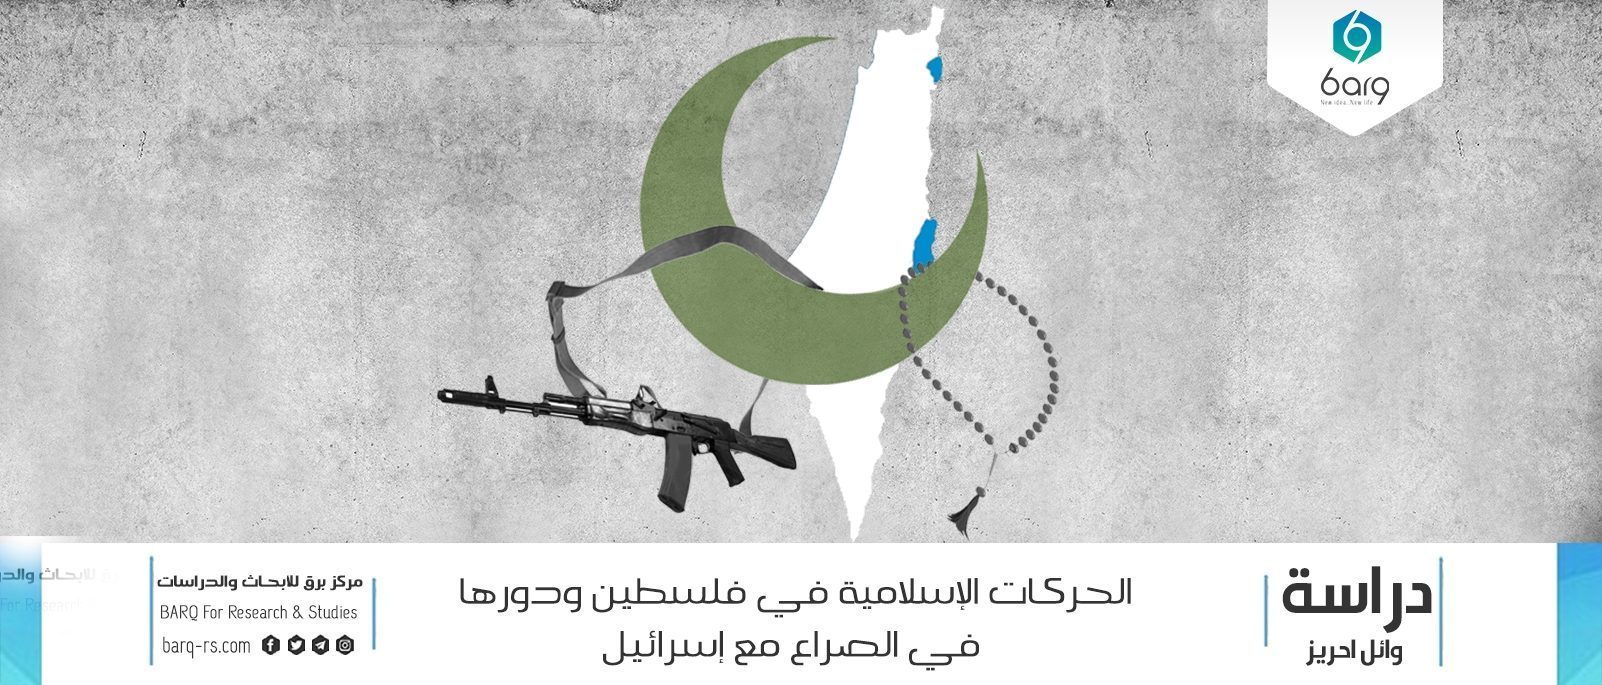 الحركات الإسلامية في فلسطين ودورها في الصراع مع إسرائيل